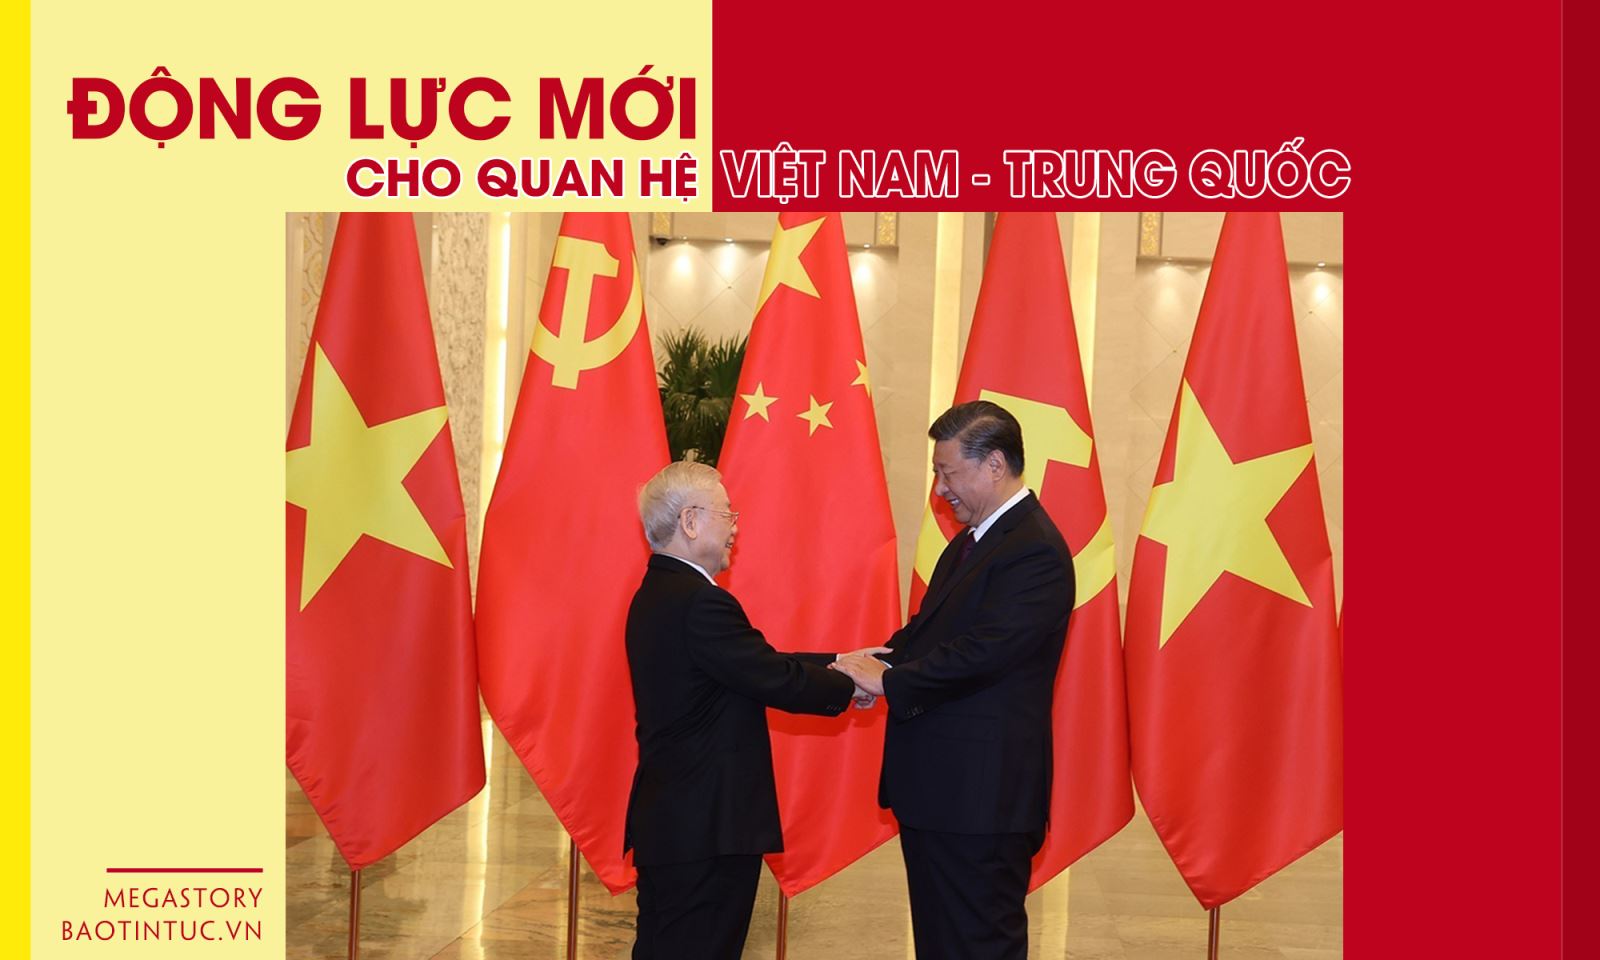 Quan hệ Việt Nam-Trung Quốc: Quan hệ giữa Việt Nam và Trung Quốc đã đi lên một tầm cao mới trong những năm qua. Hãy xem những hình ảnh để thấy rõ tình hữu nghị giữa hai nước được củng cố như thế nào và các hoạt động hợp tác quan trọng đang diễn ra.